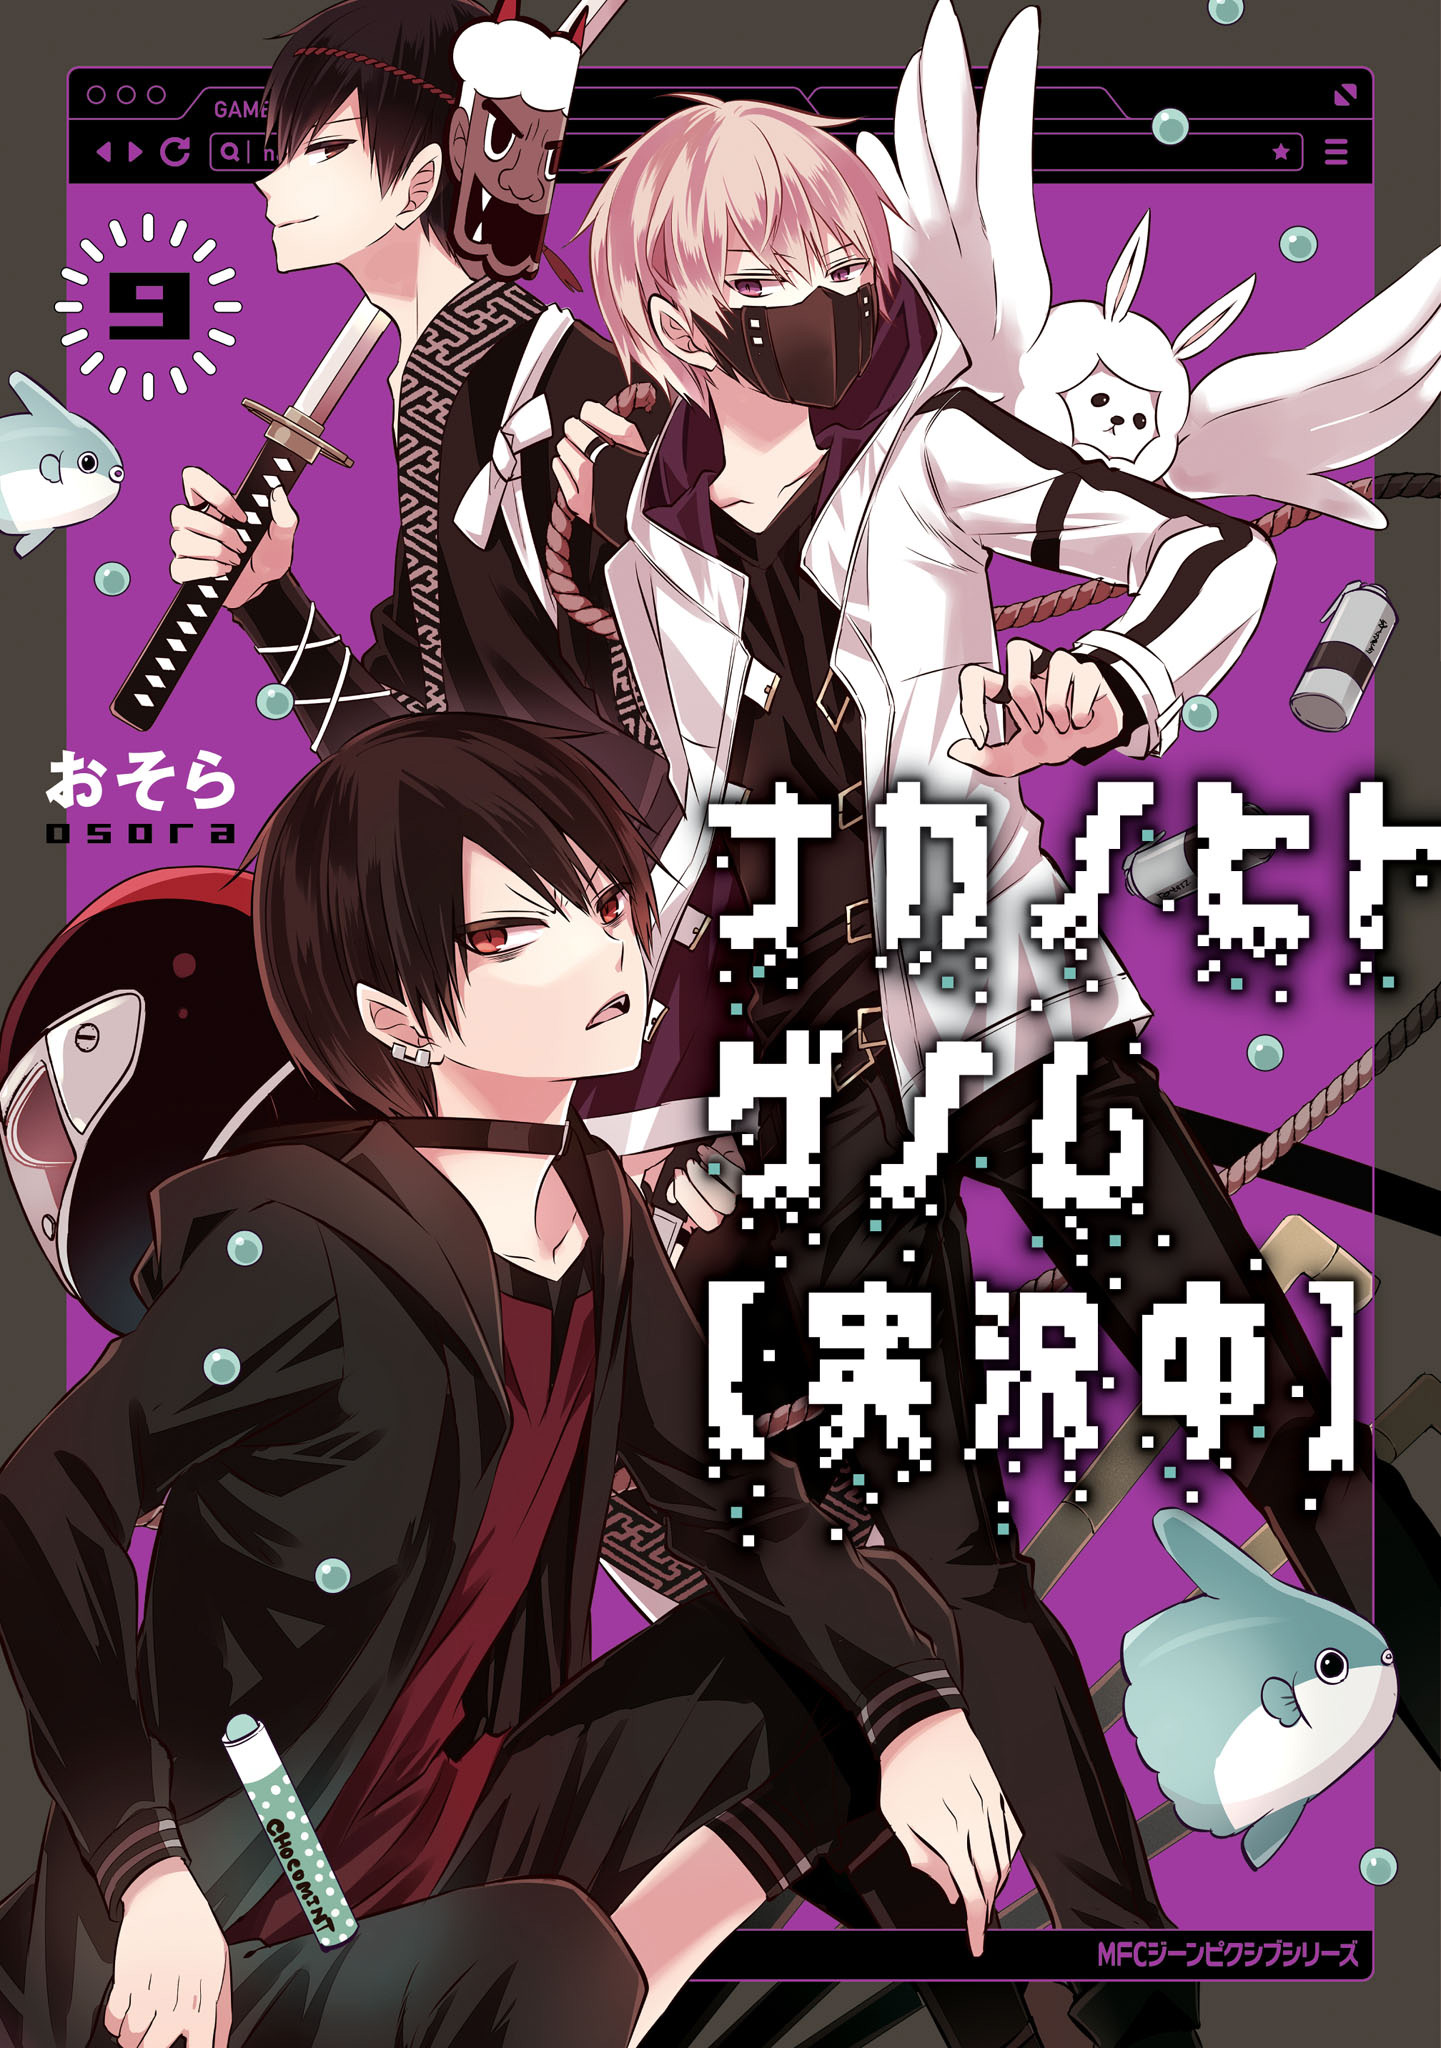 Nakanohito Genome - Manga Livre RS